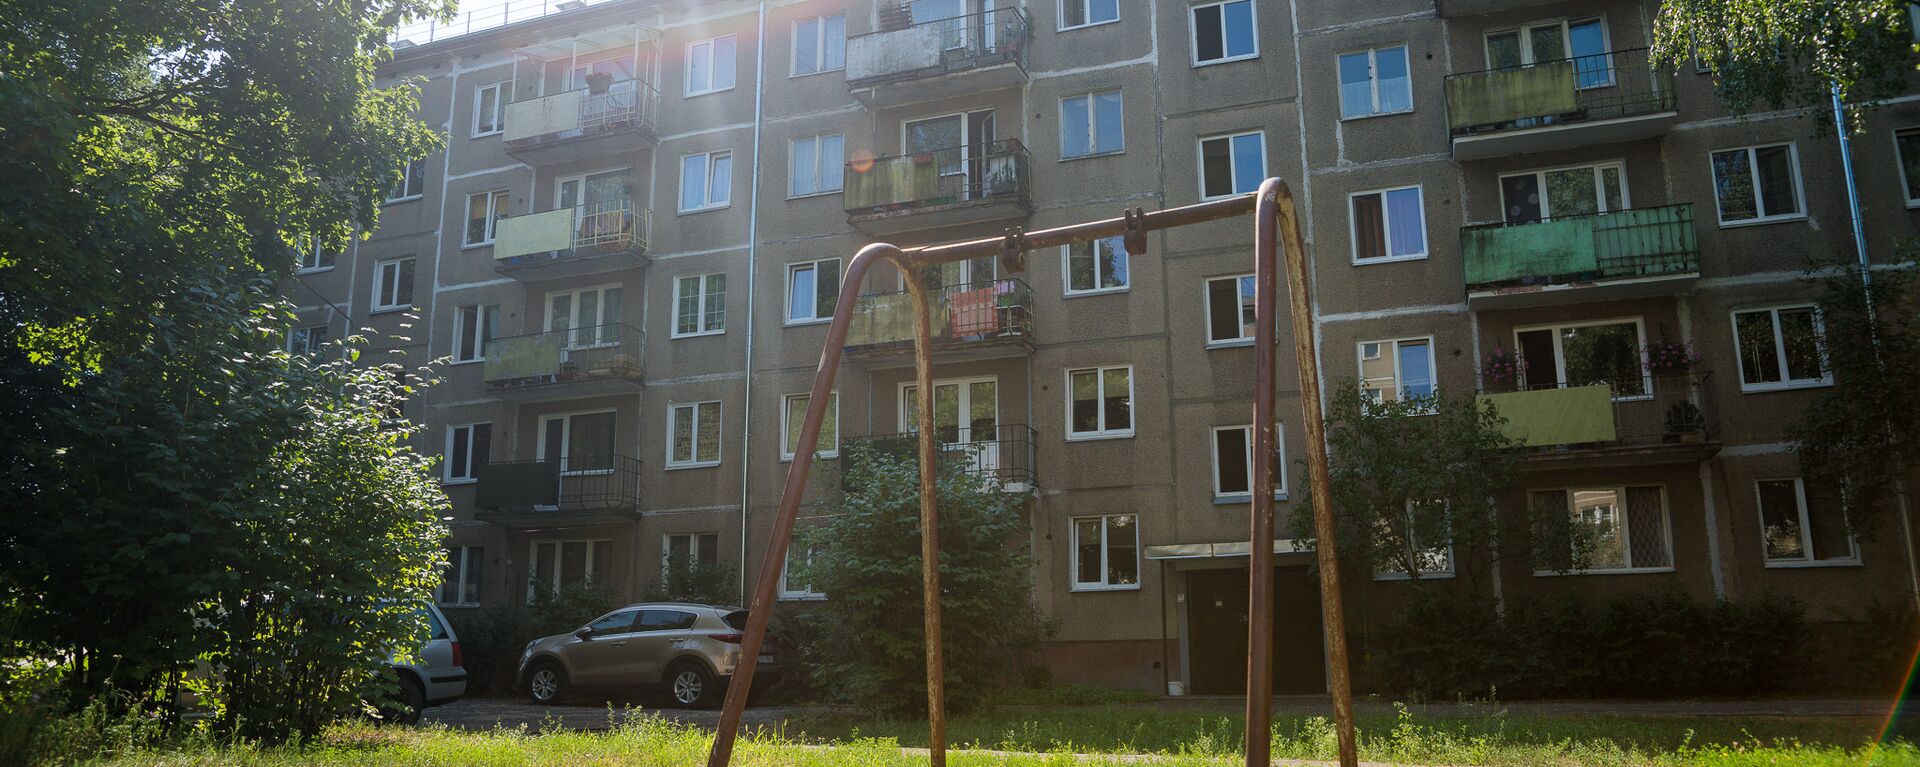 Daudzdzīvokļu māja Juglā - Sputnik Latvija, 1920, 04.06.2021